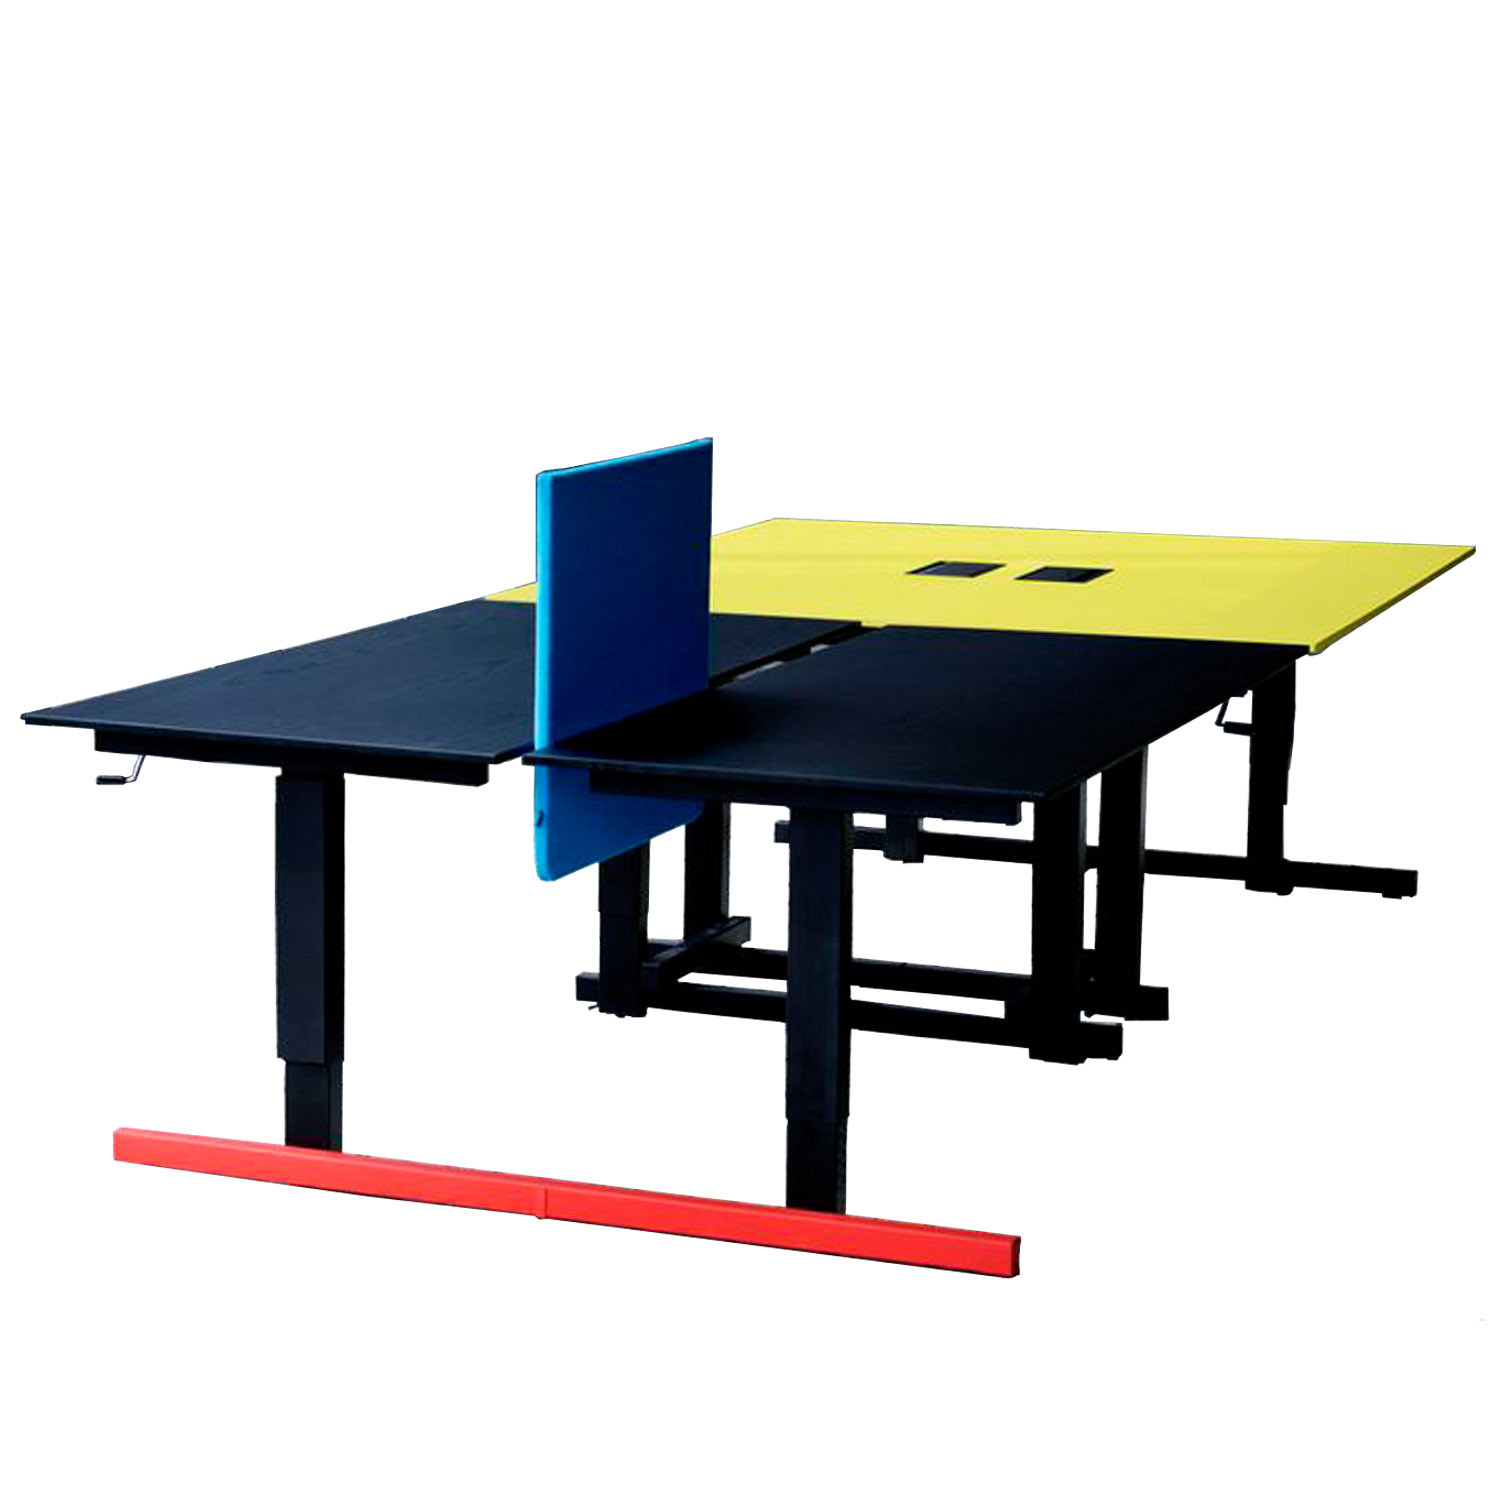 Grid Height Adjustable Bench Desks